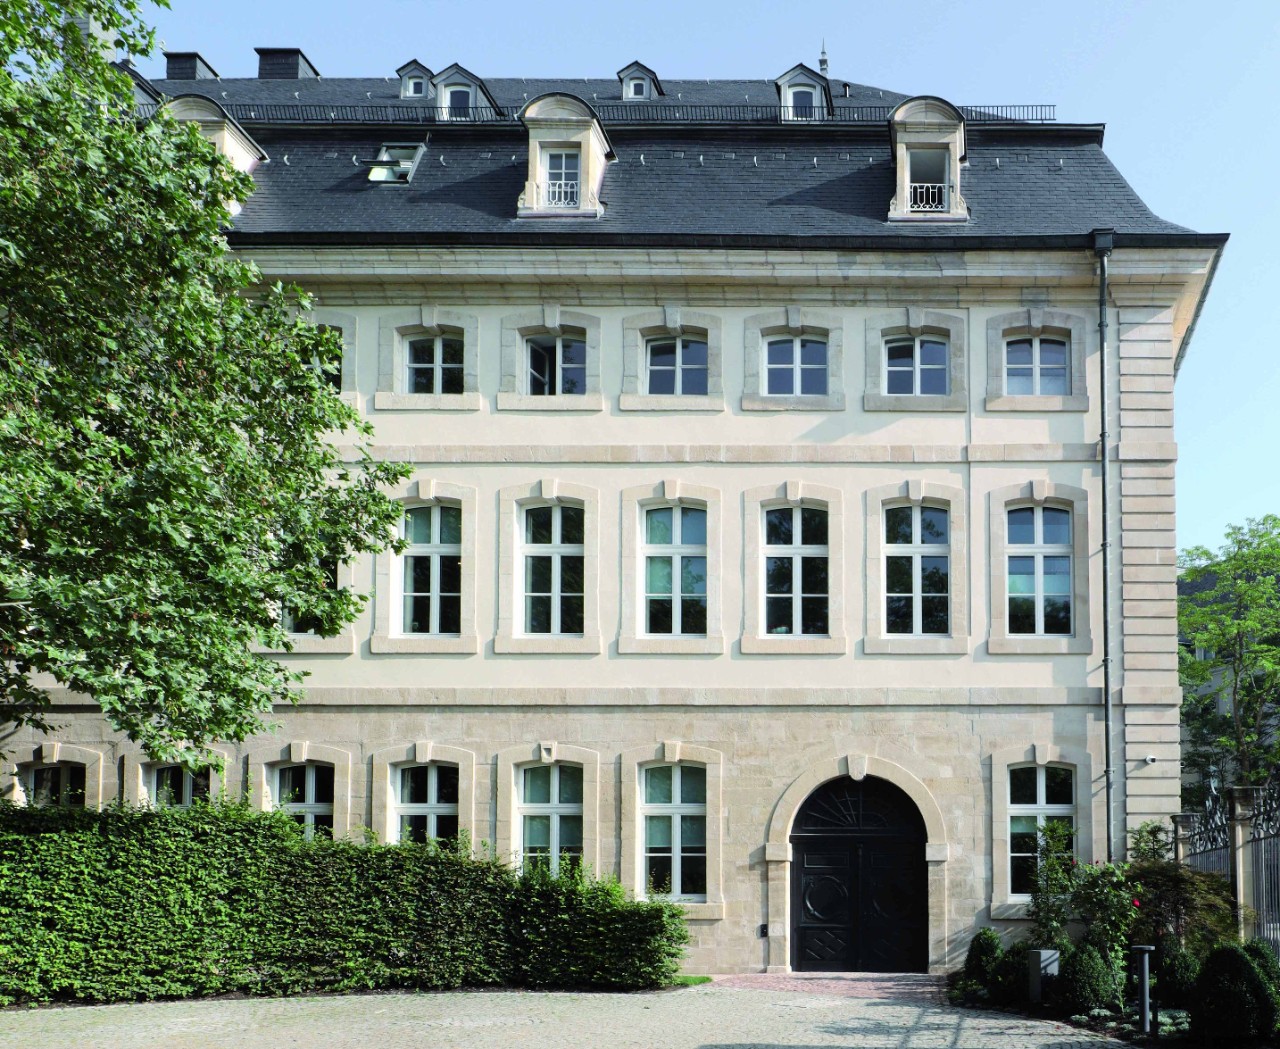 L'hôtel Saint Maximin est un des immeubles qui héberge le ministère d'État. L'intégration de technologies de pointe a été un défi bien maîtrisé dans un des immeubles les plus connus du Luxembourg. Et l'effort entrepris a valu à ce projet de remporter le prix pour le meilleur bâtiment à vocation administrative.